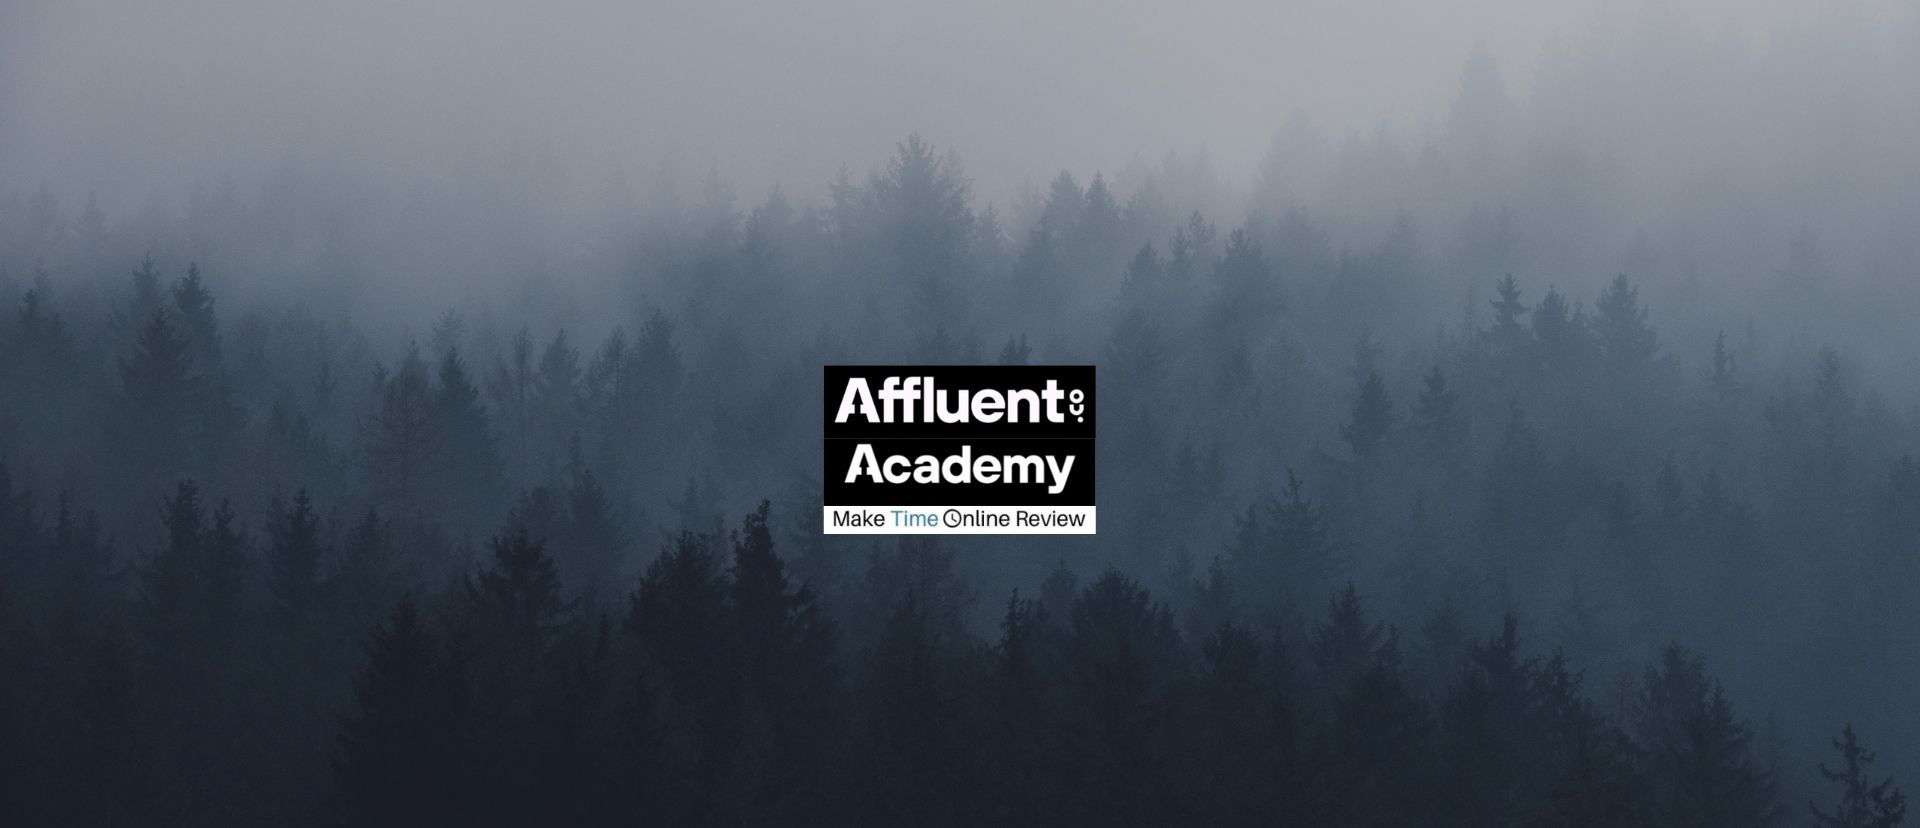 Affluent Academy